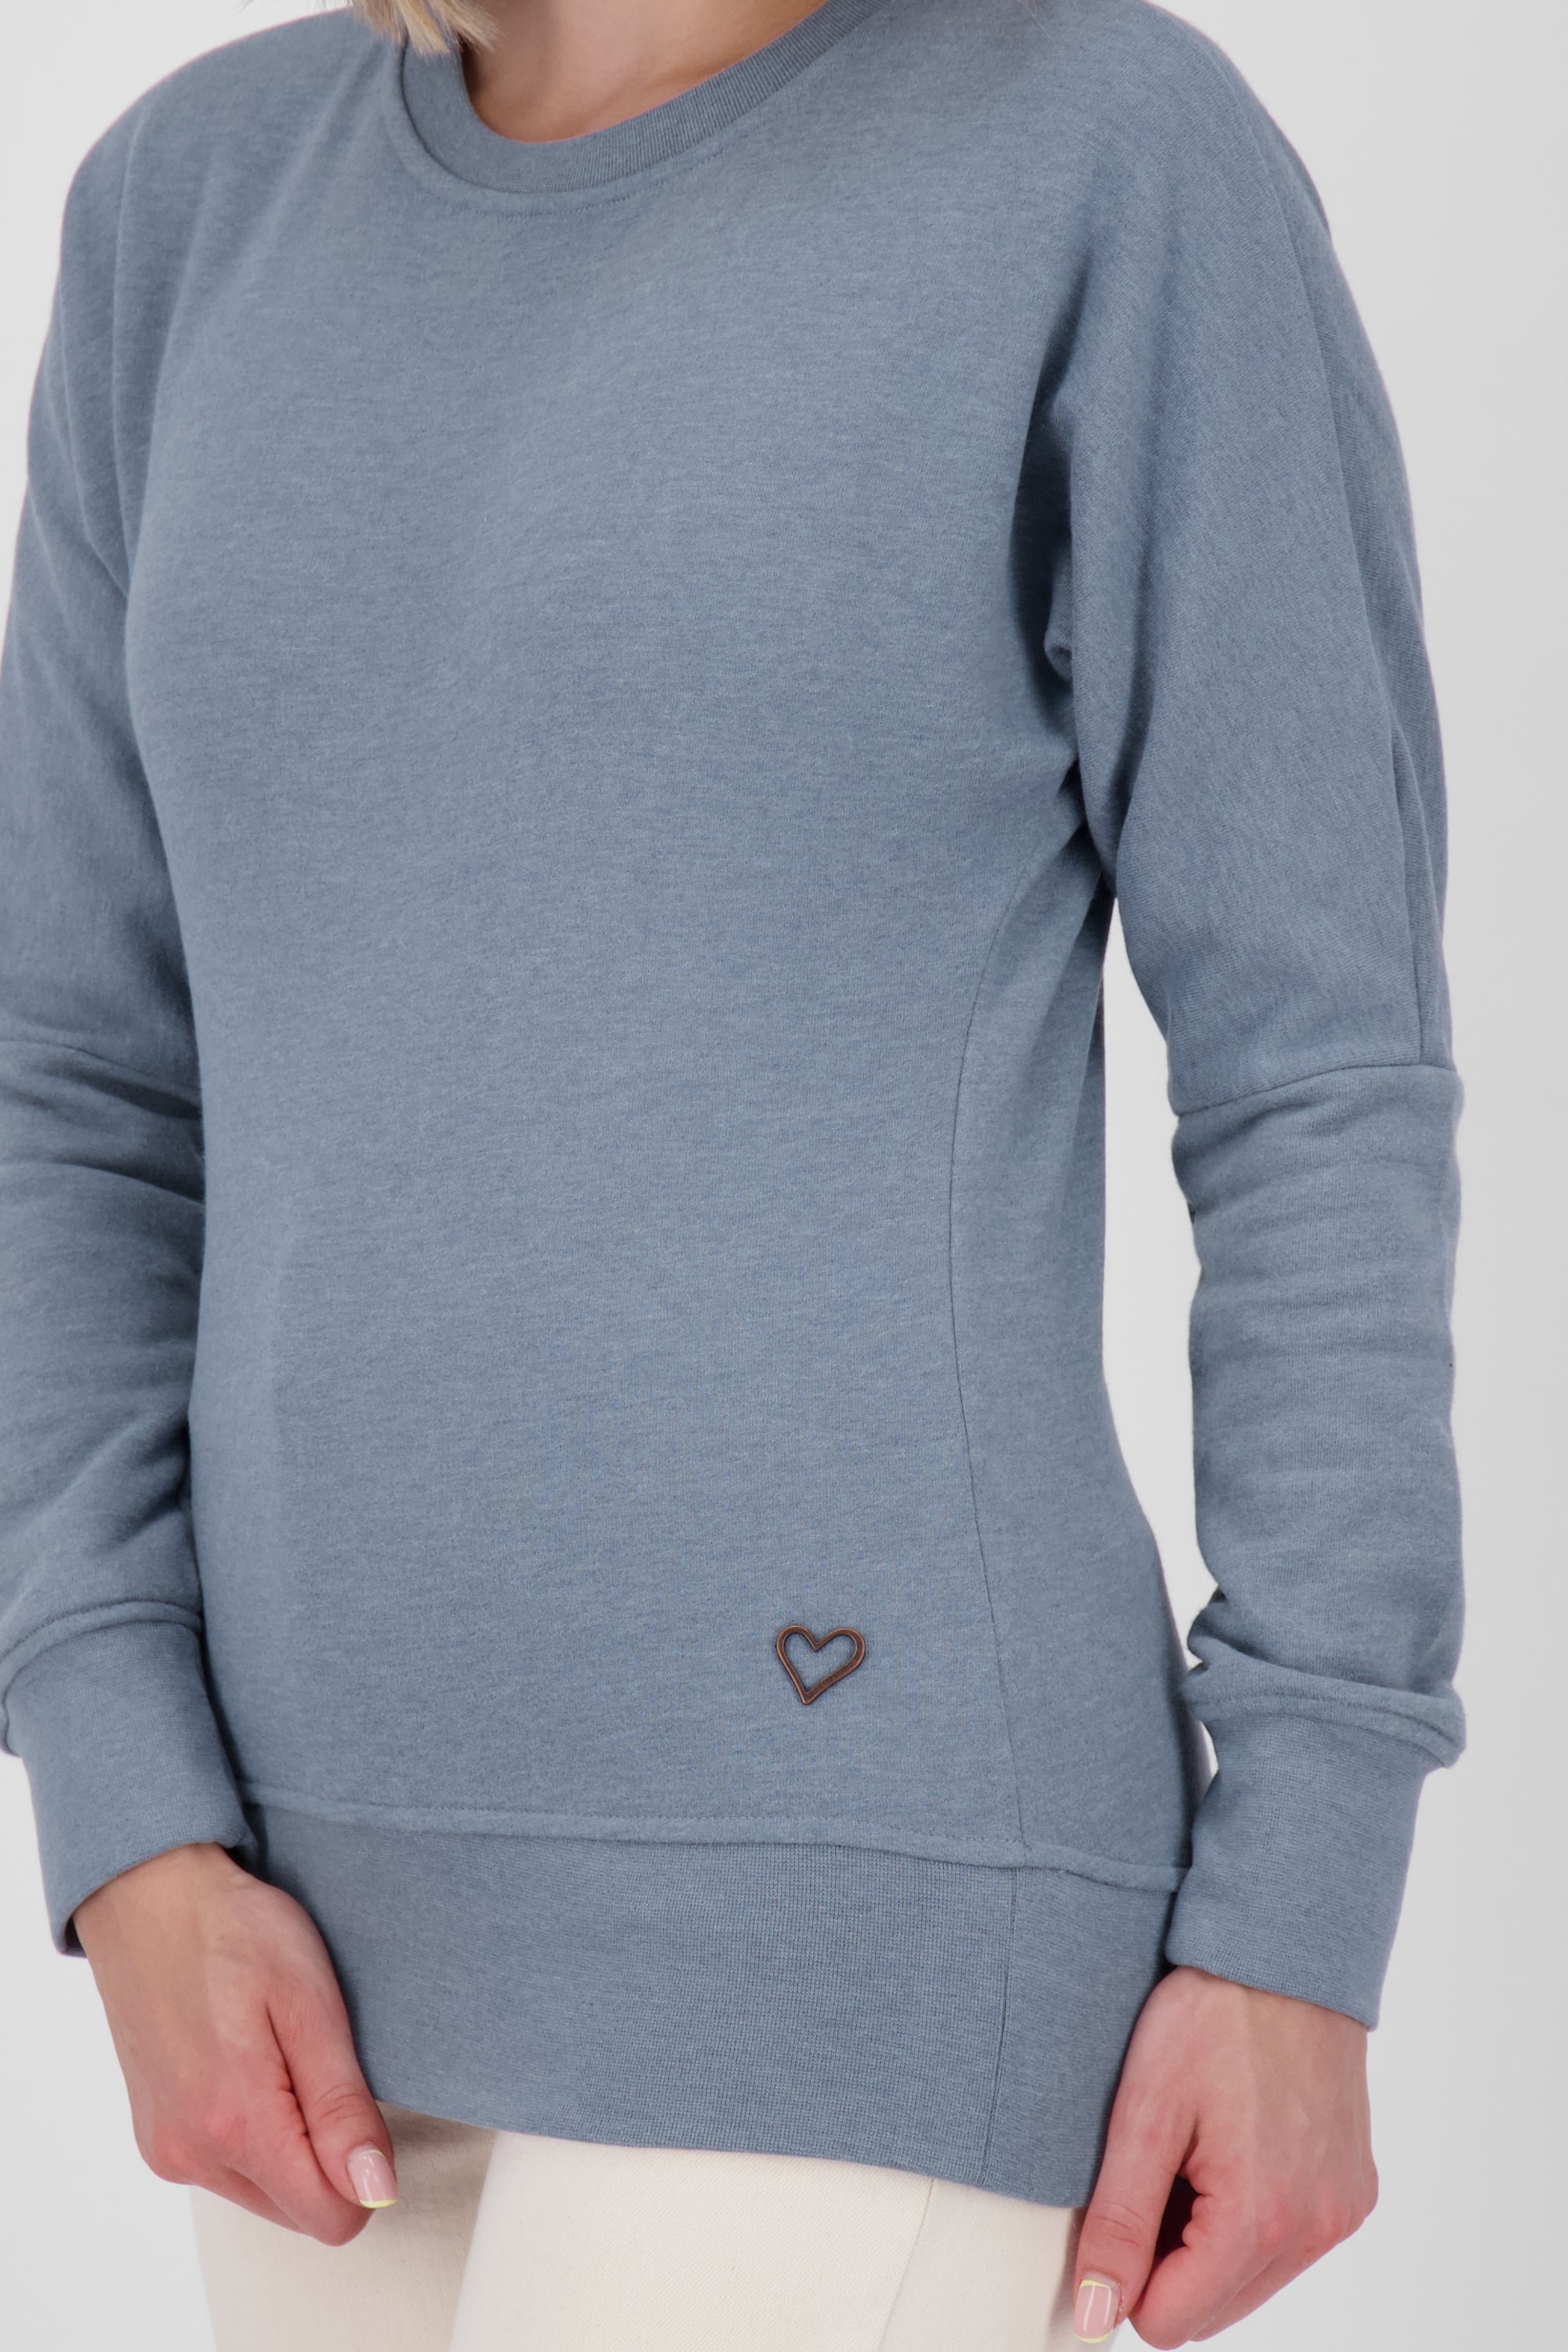 DarinAK A Sweater für Damen - Trendiger und farbenfroher Sweatpullover Blau